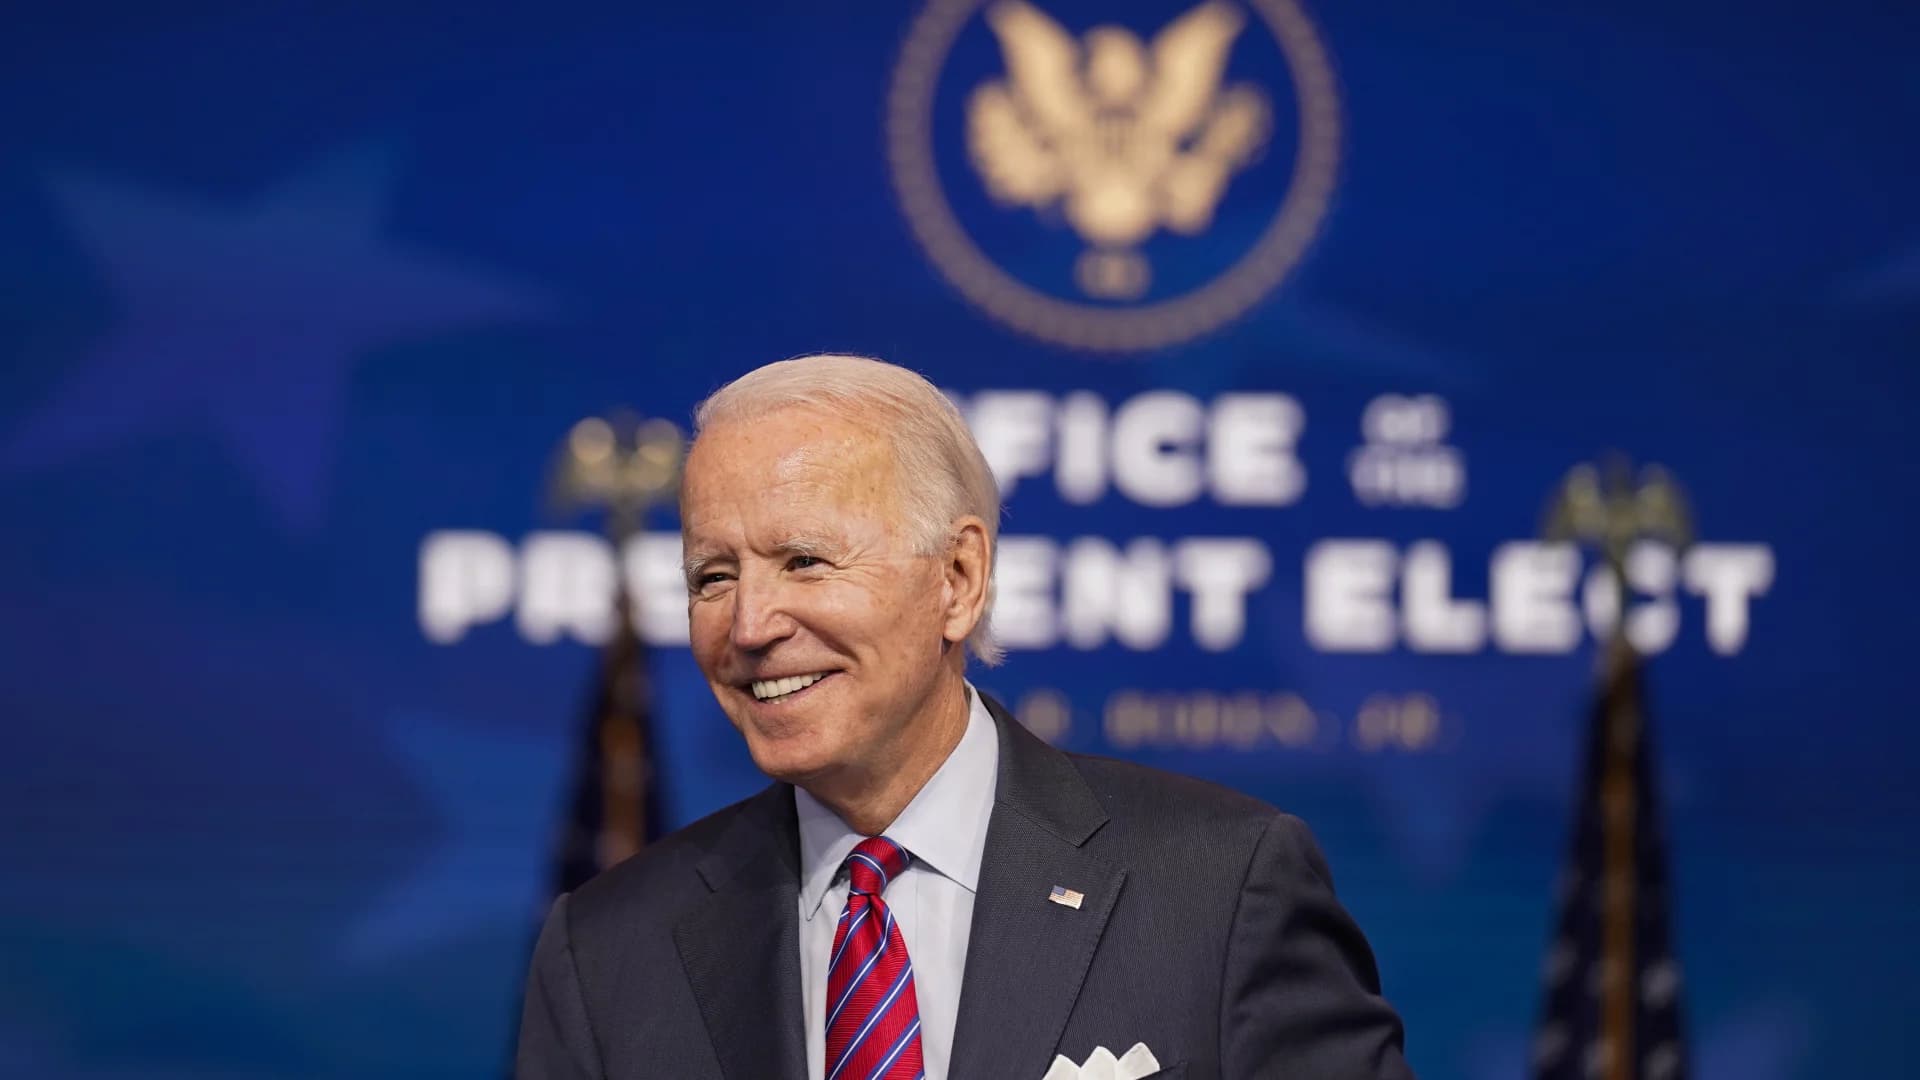 Joe Biden officially secures enough electors to become president